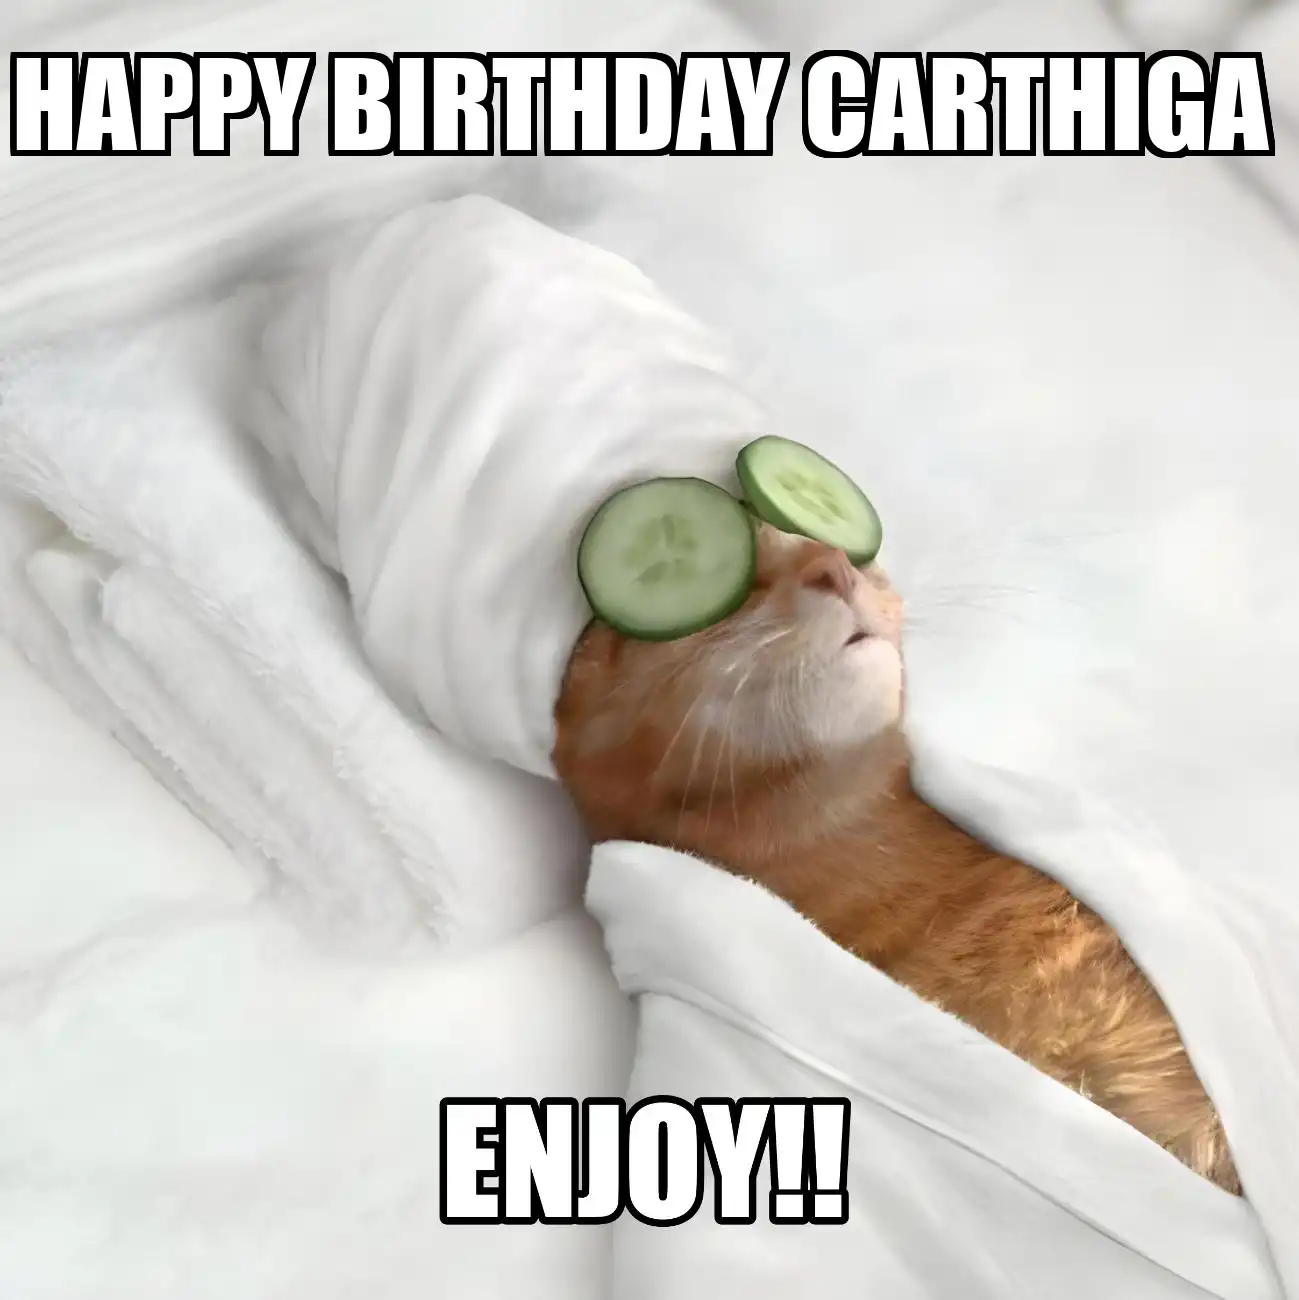 Happy Birthday Carthiga Enjoy Cat Meme